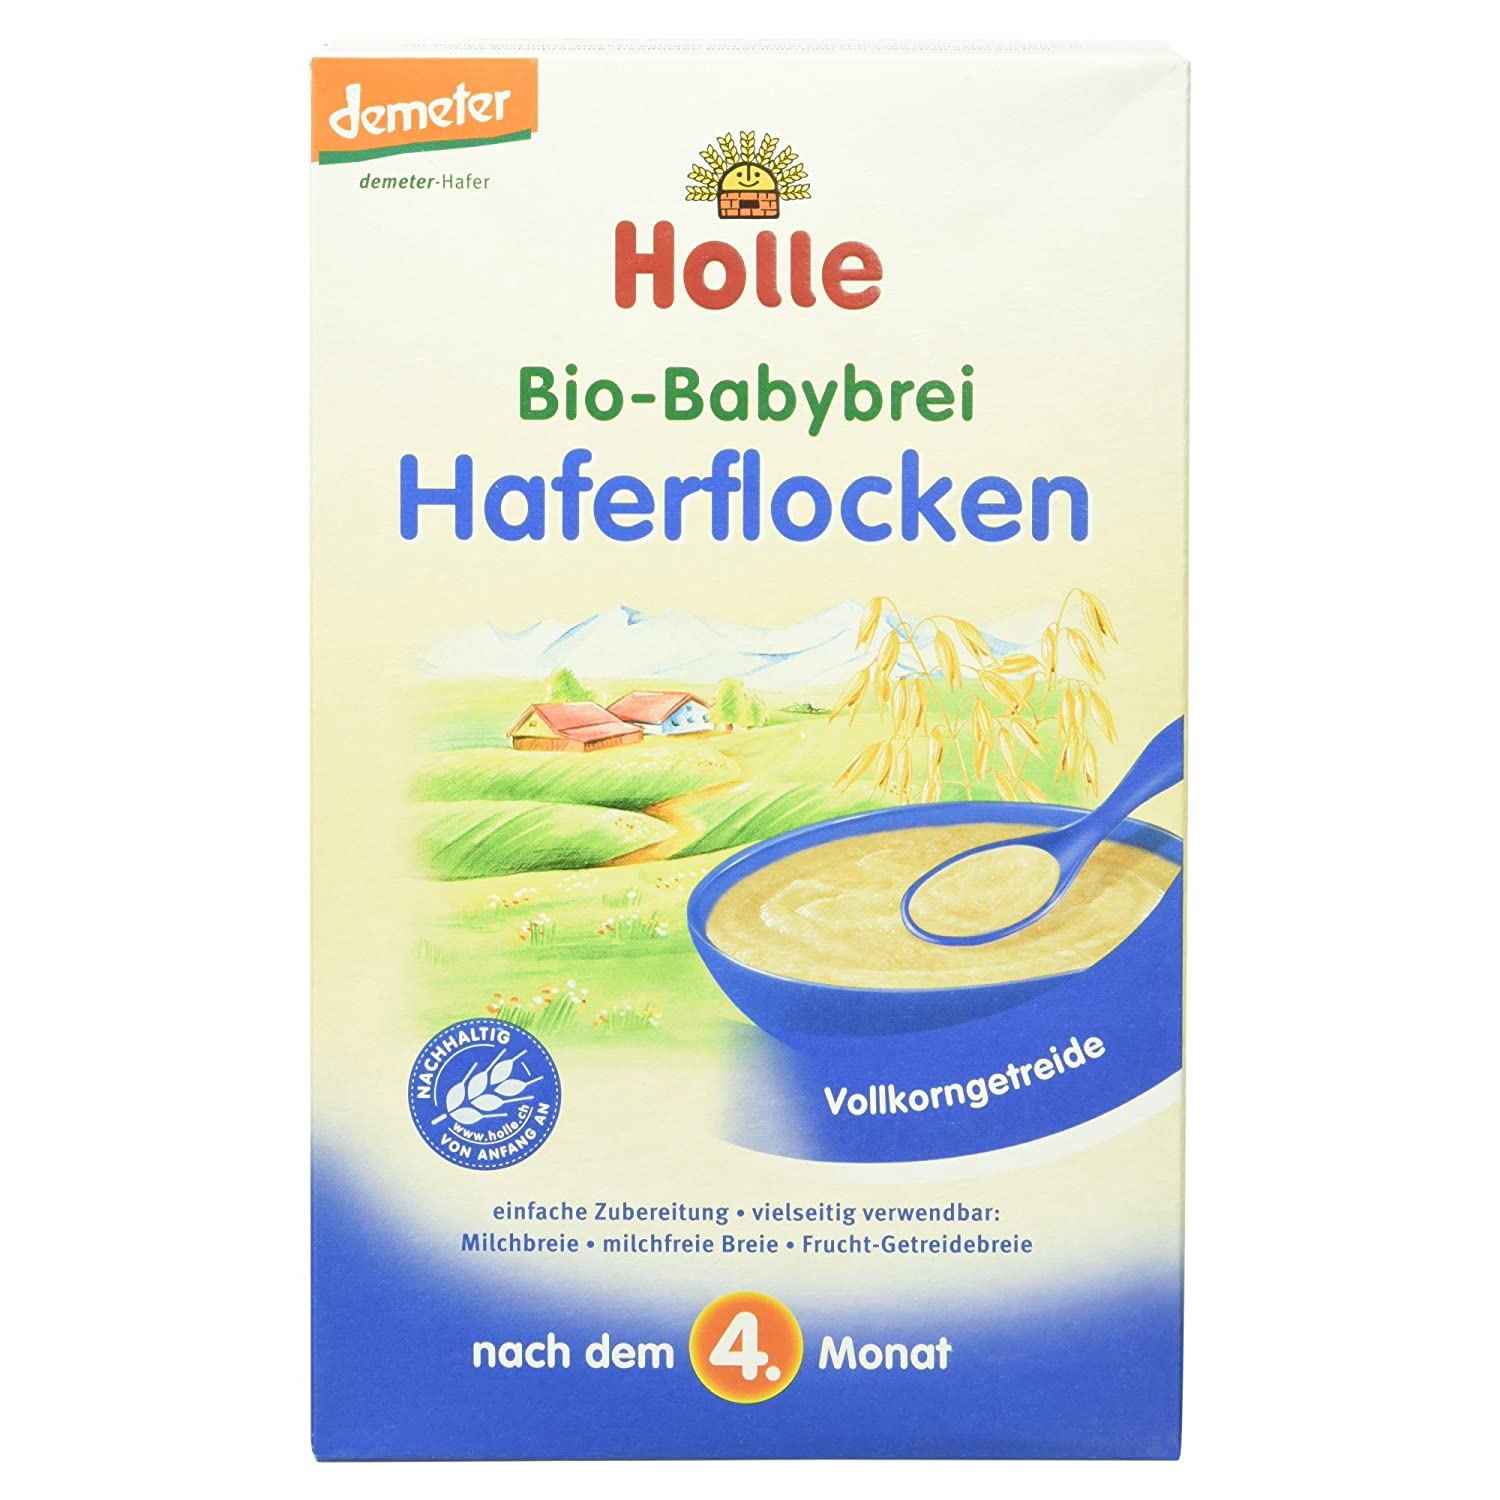 Holle Bio-Babybrei Haferflocken (1 x 250 g)